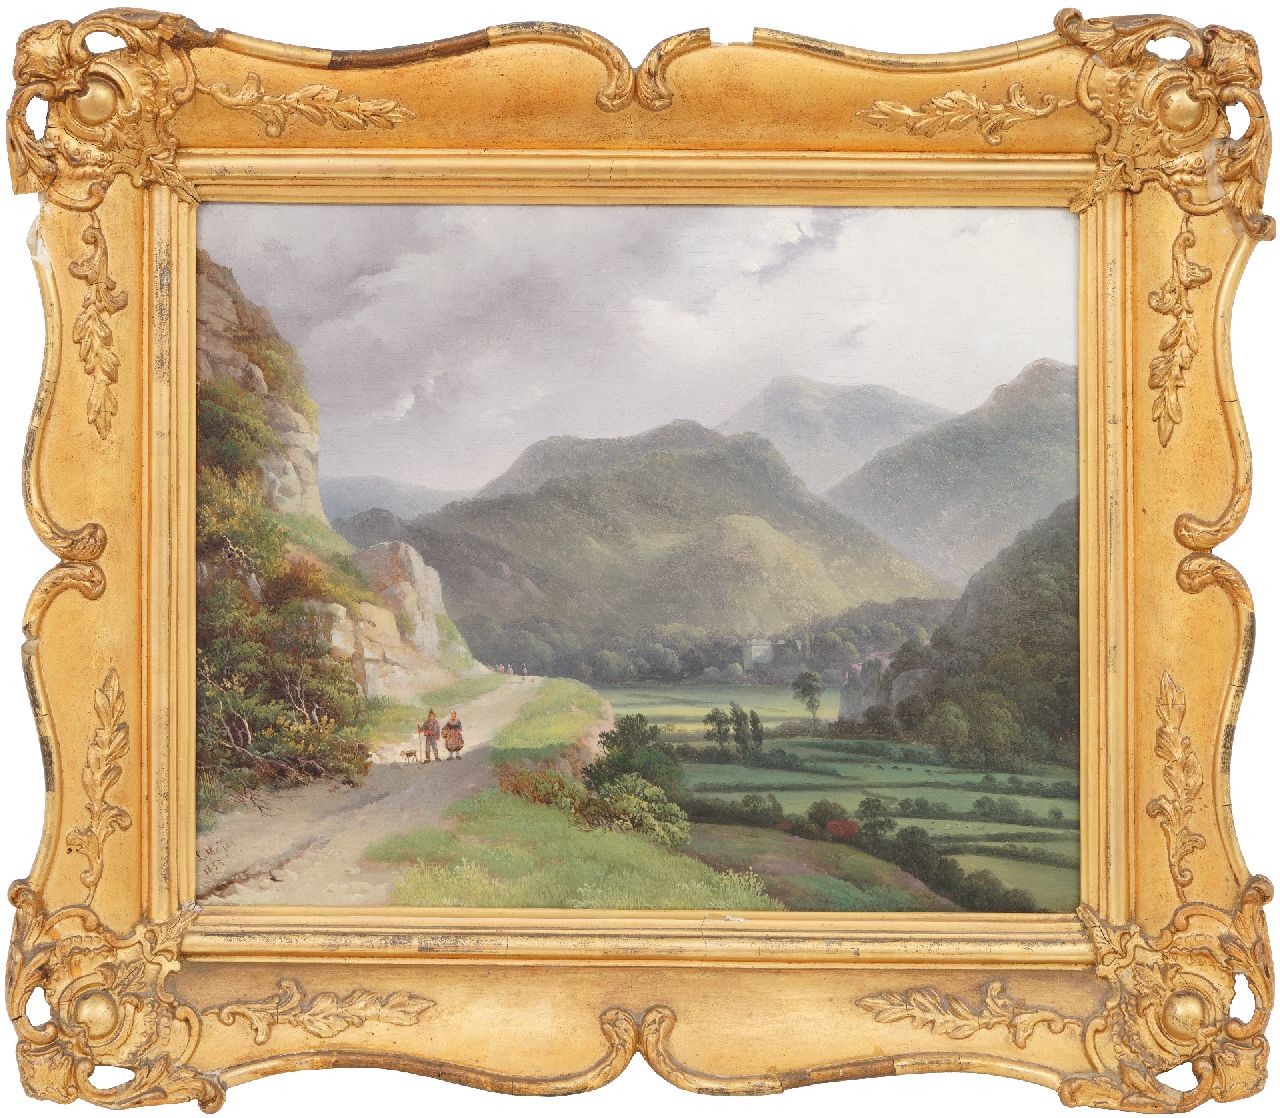 Meijer J.H.L.  | Johan Hendrik 'Louis' Meijer | Schilderijen te koop aangeboden | Berglandschap, olieverf op paneel 26,0 x 34,6 cm, gesigneerd linksonder en gedateerd 1833